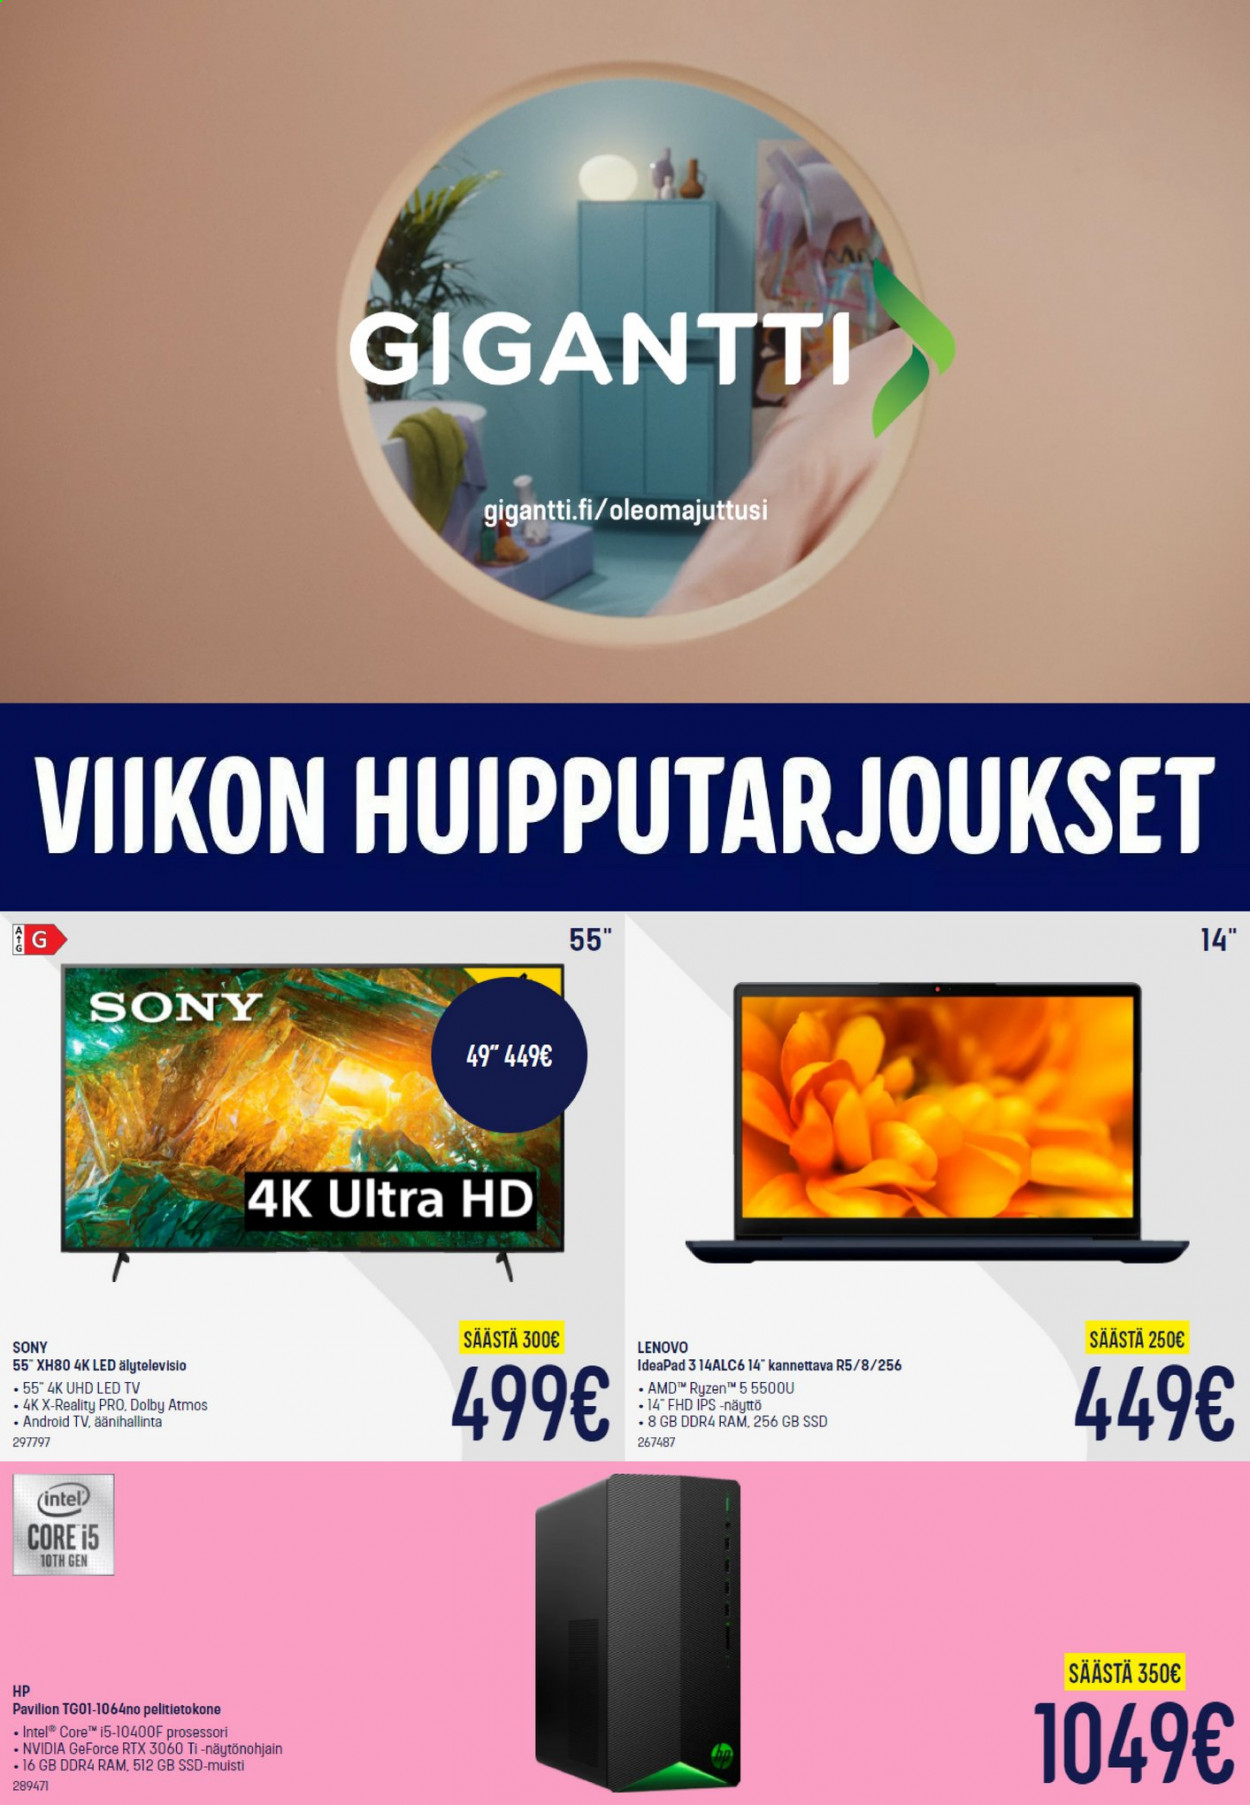 thumbnail - Gigantti tarjoukset  - 26.07.2021 - 01.08.2021 - Tarjoustuotteet - Sony, Hewlett Packard, IdeaPad, Intel, pelitietokone, Android TV, TV, Ultra HD. Sivu 1.